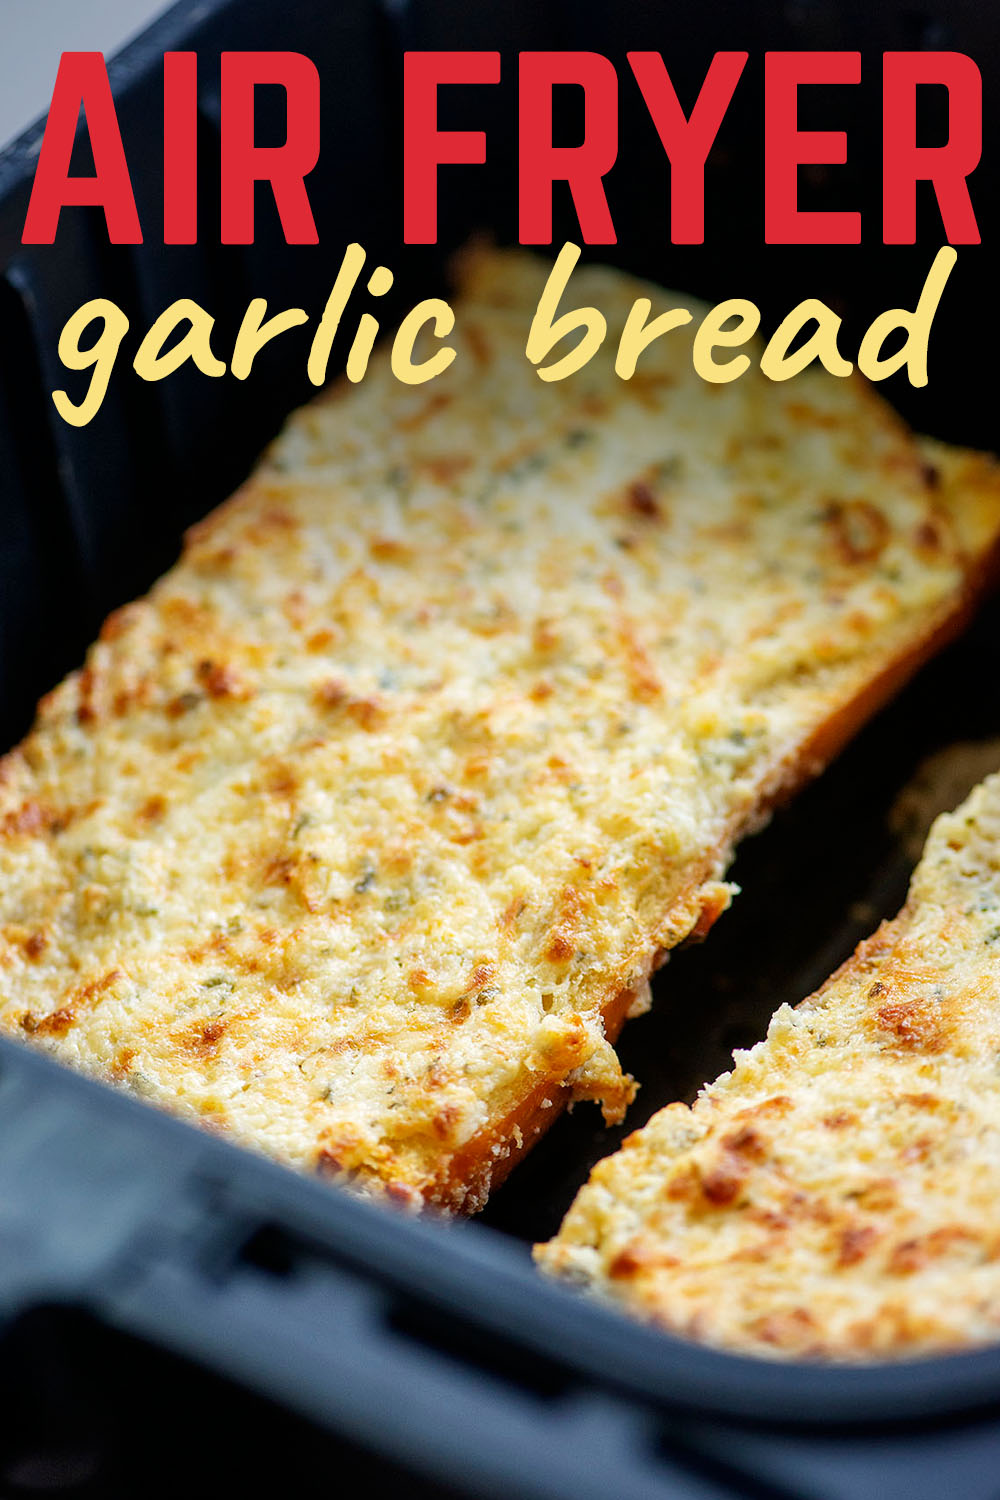 Garlic cheese bread in an air fryer.